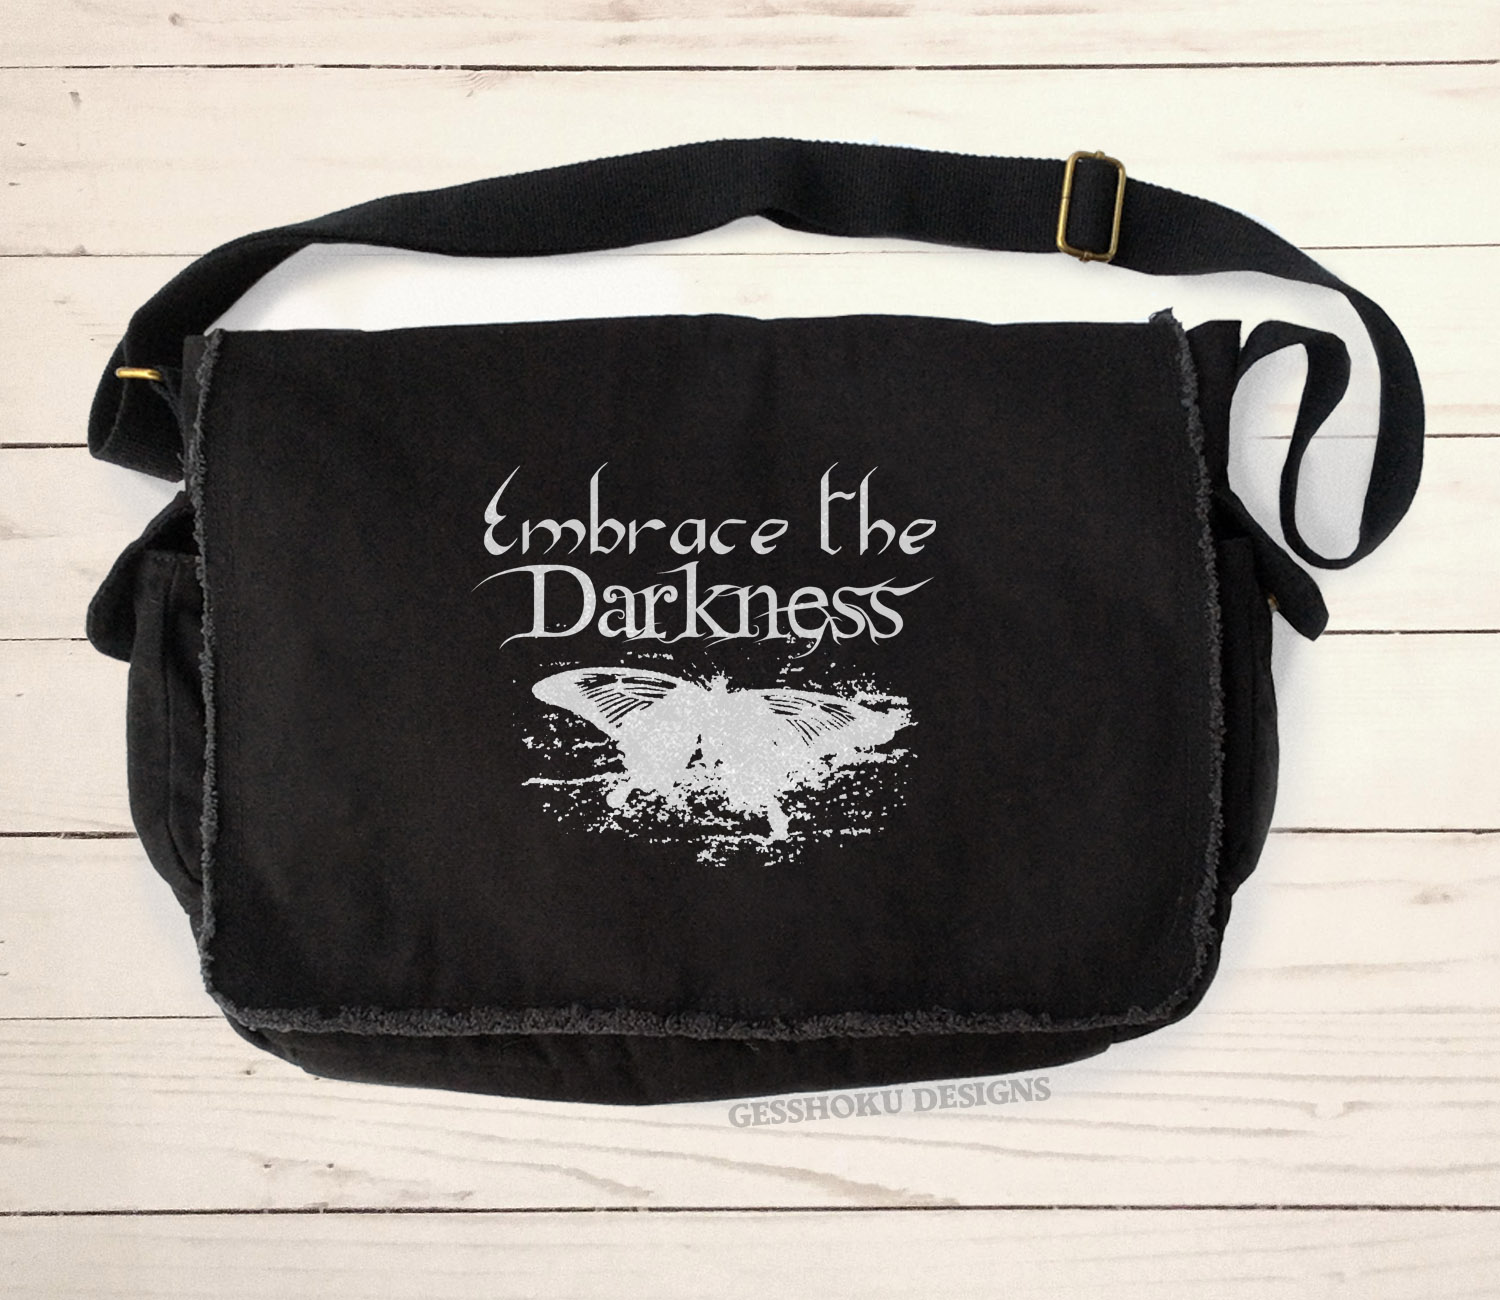 Embrace the Darkness Messenger Bag - Black-